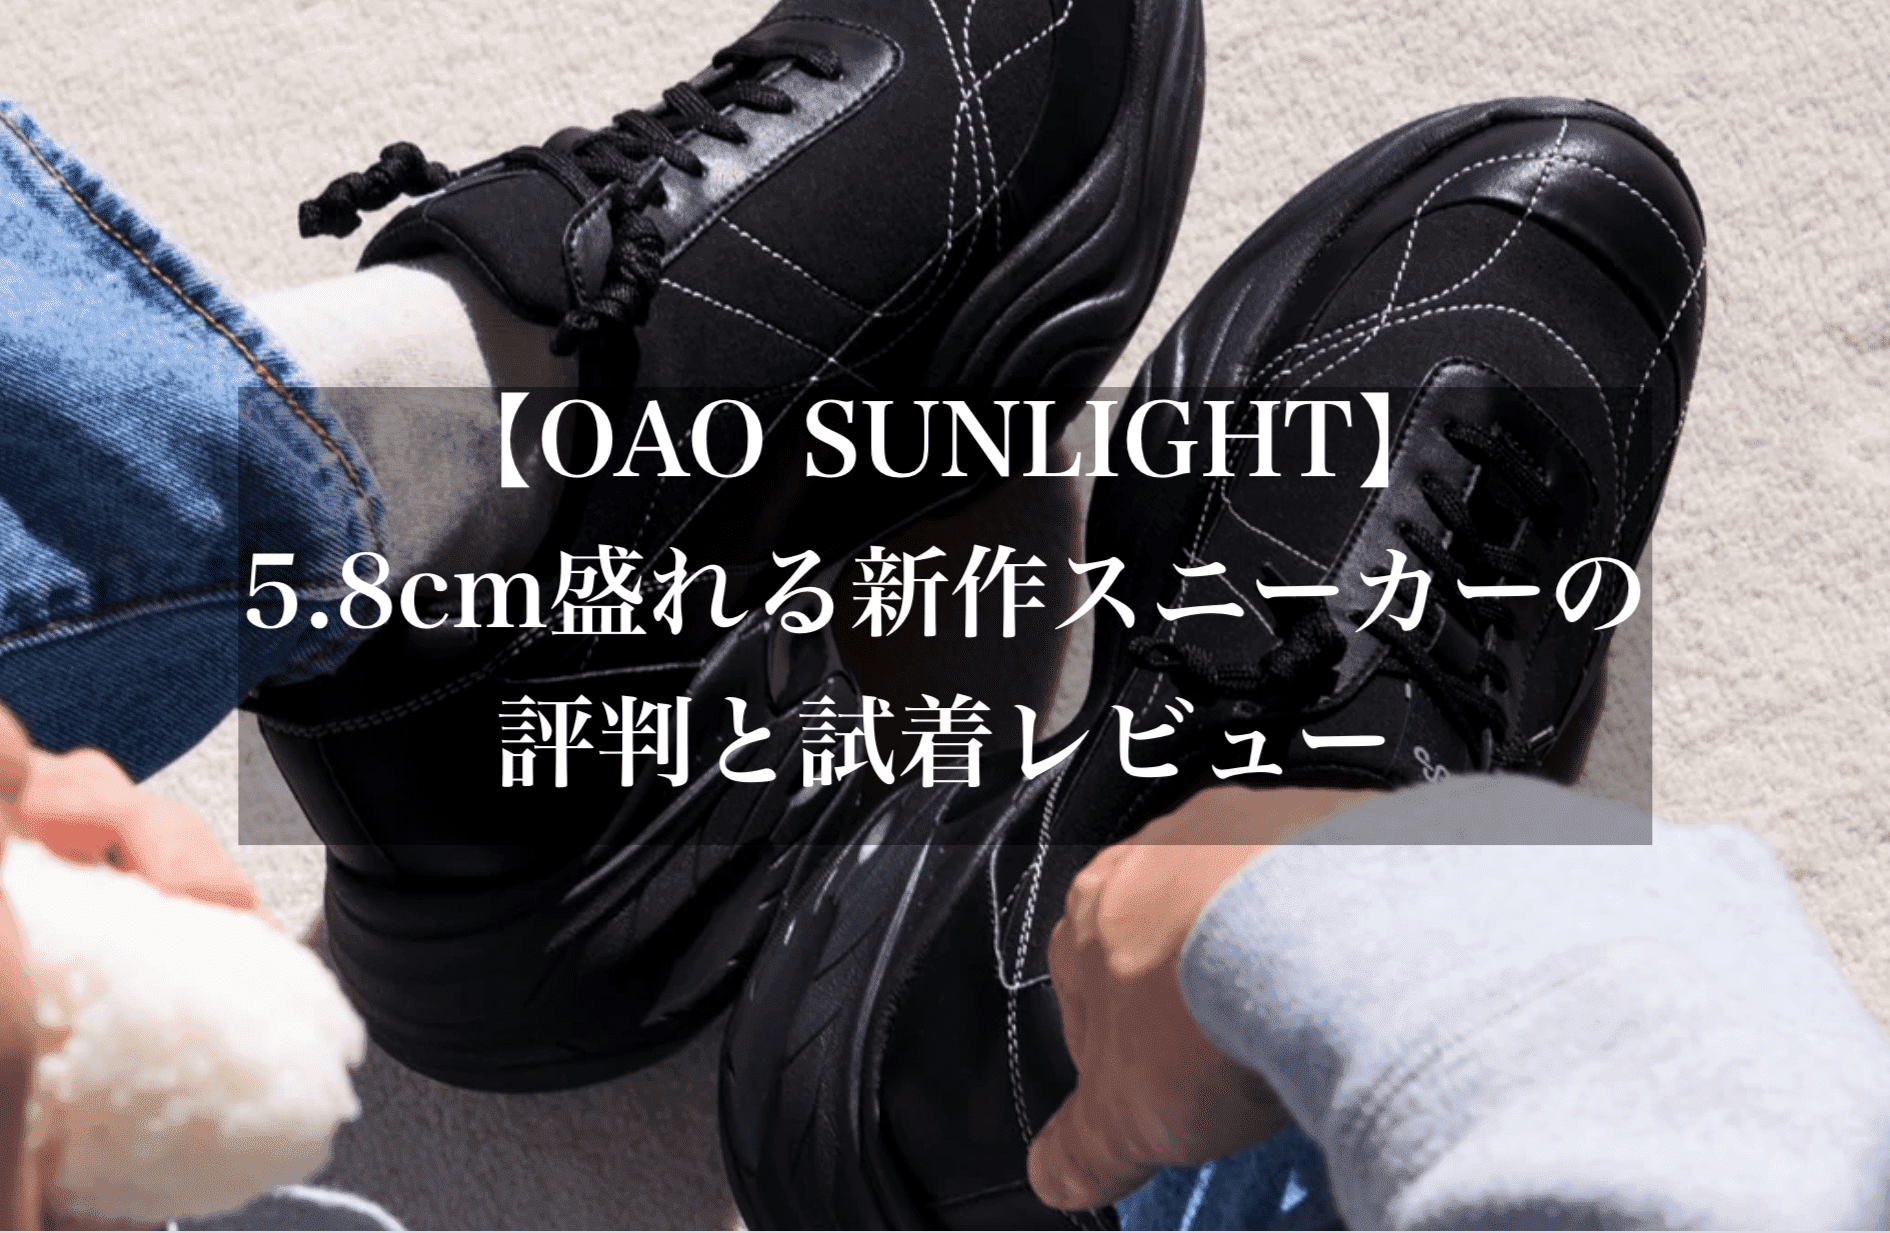 OAO SUNLIGHT (Black)